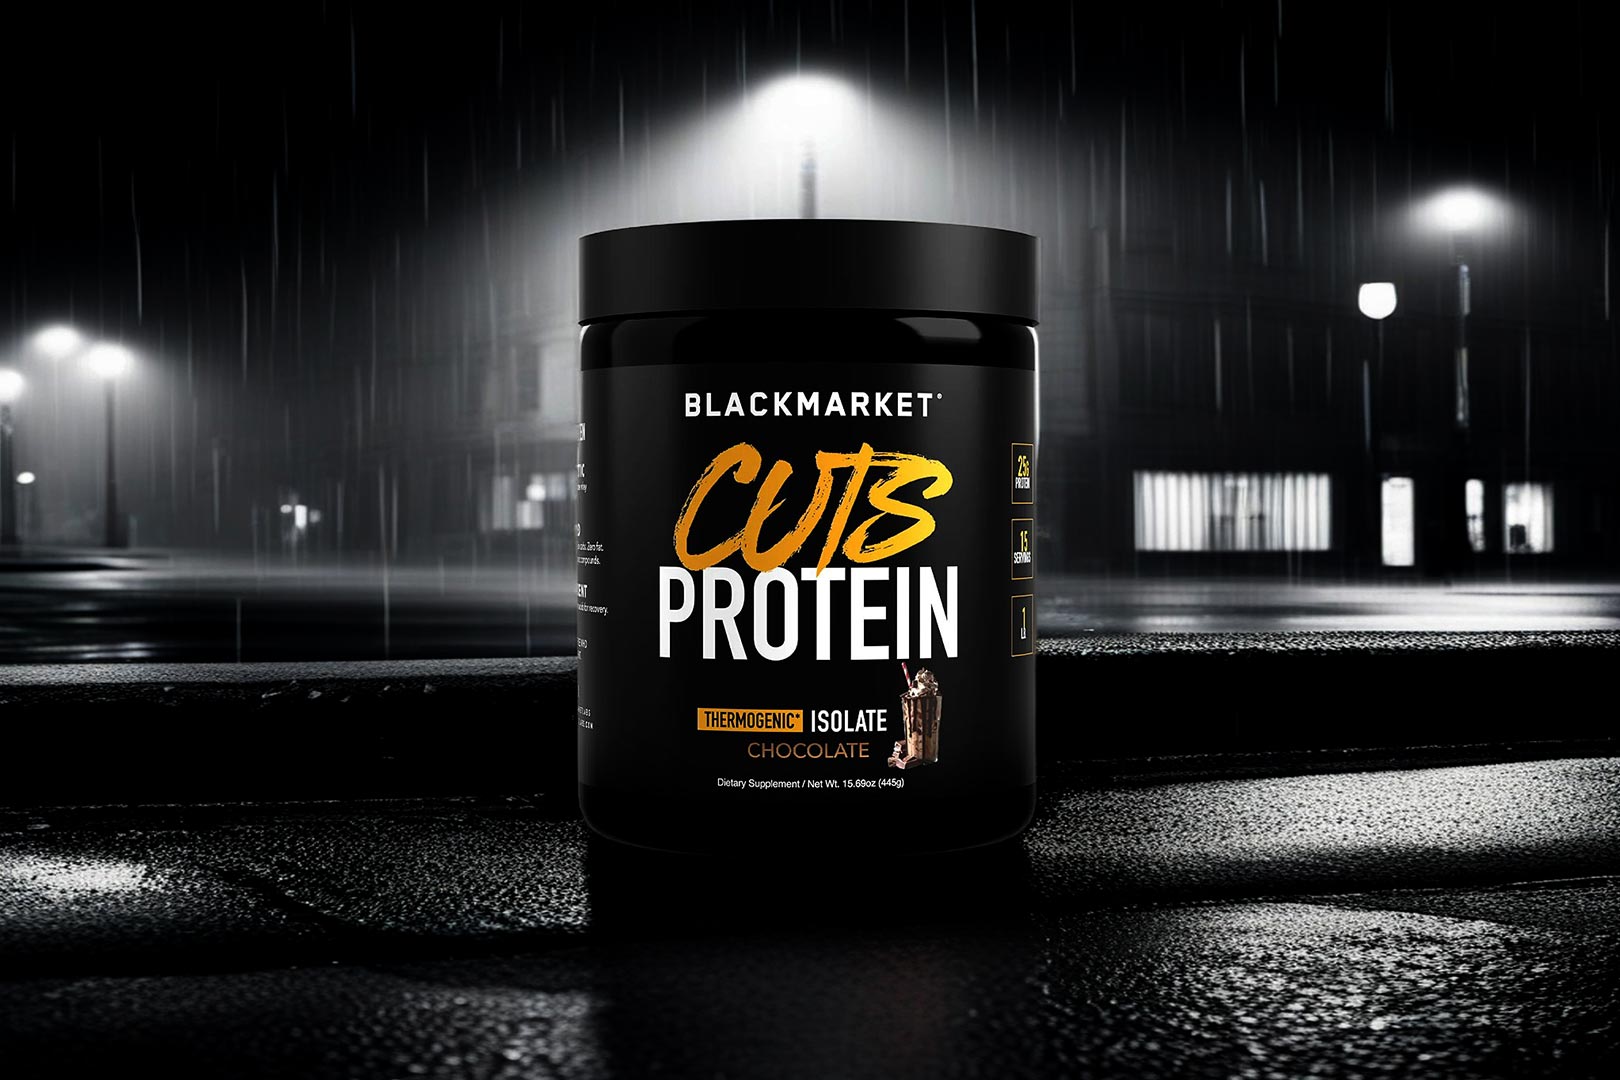 Black Market Cuts Protein